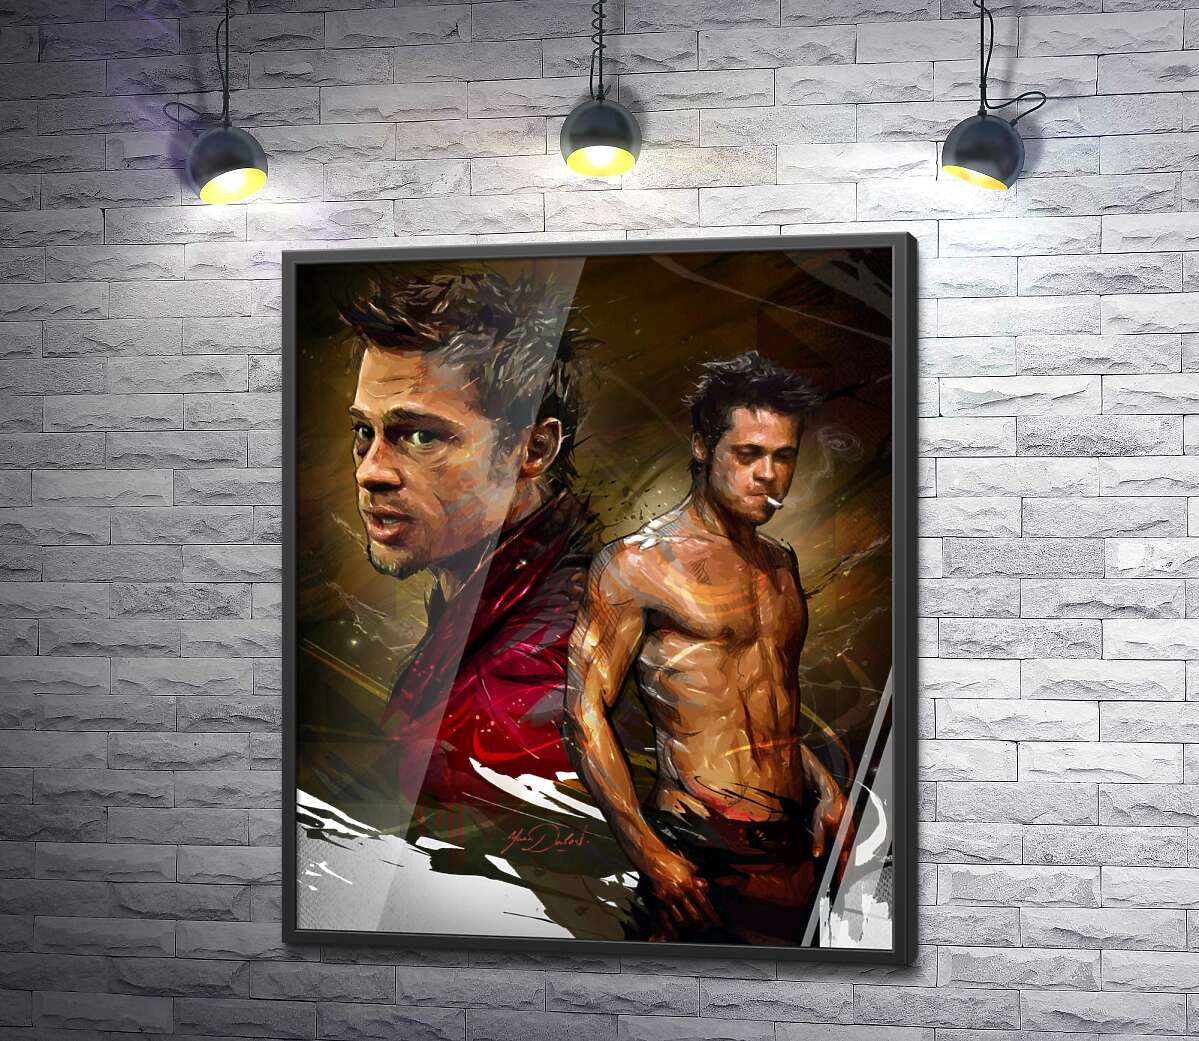 постер Актор Бред Пітт (Brad Pitt) у головній ролі фільму "Бійцівський клуб" (Fight club)